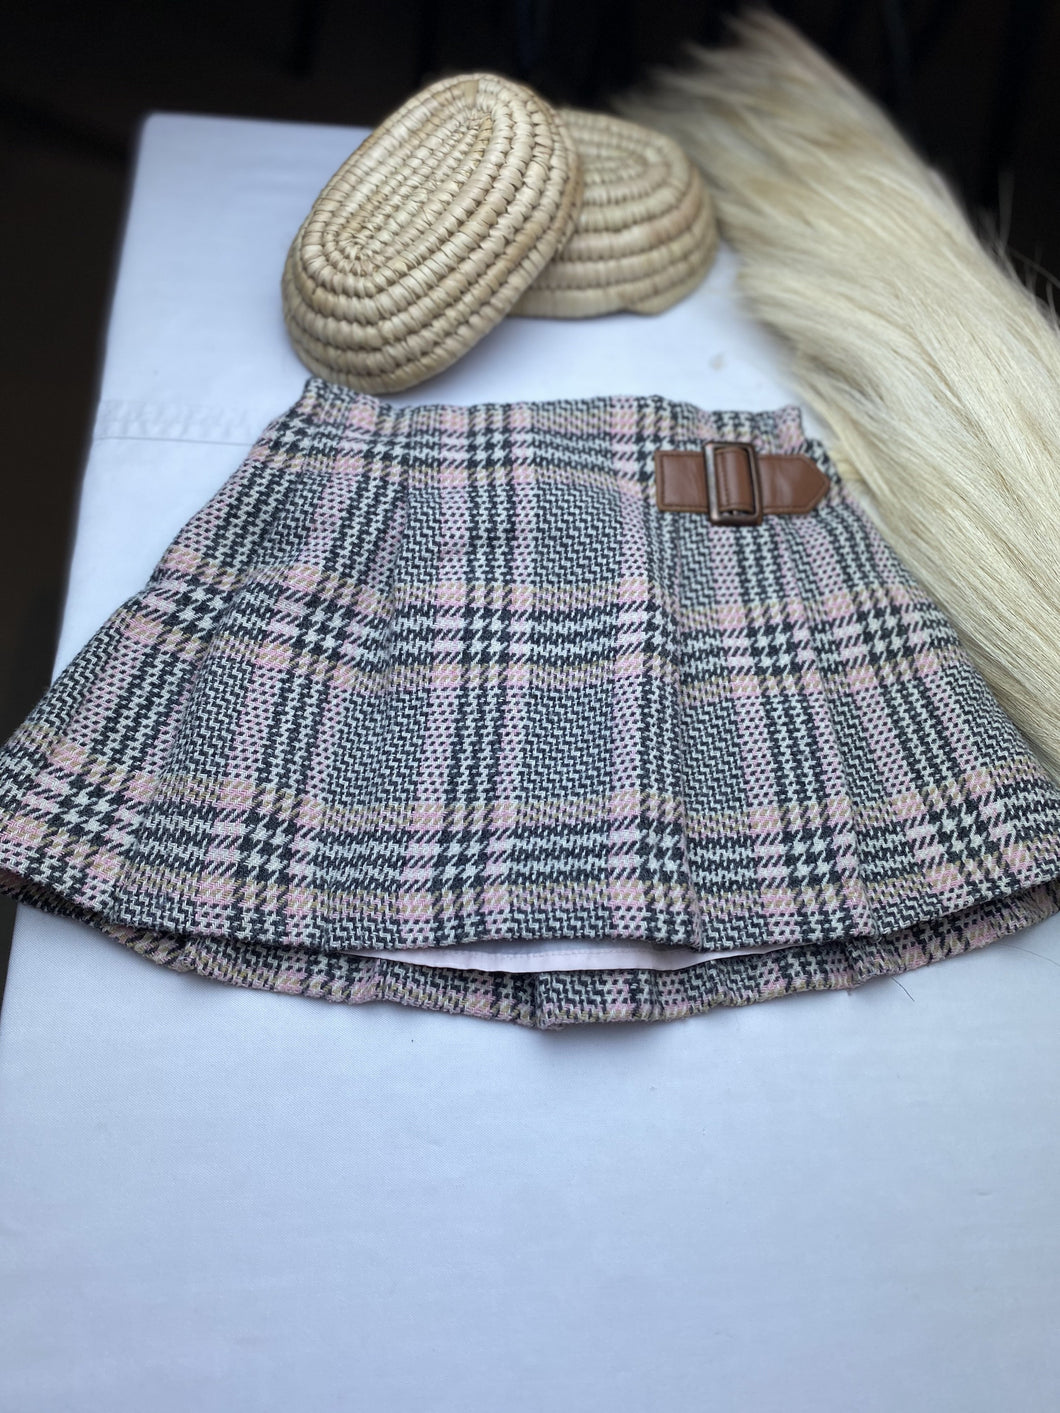 Next UK Cotton / Wool Scottish prep Pink/Grey Strip Skirt Girls 12 to 18 mths